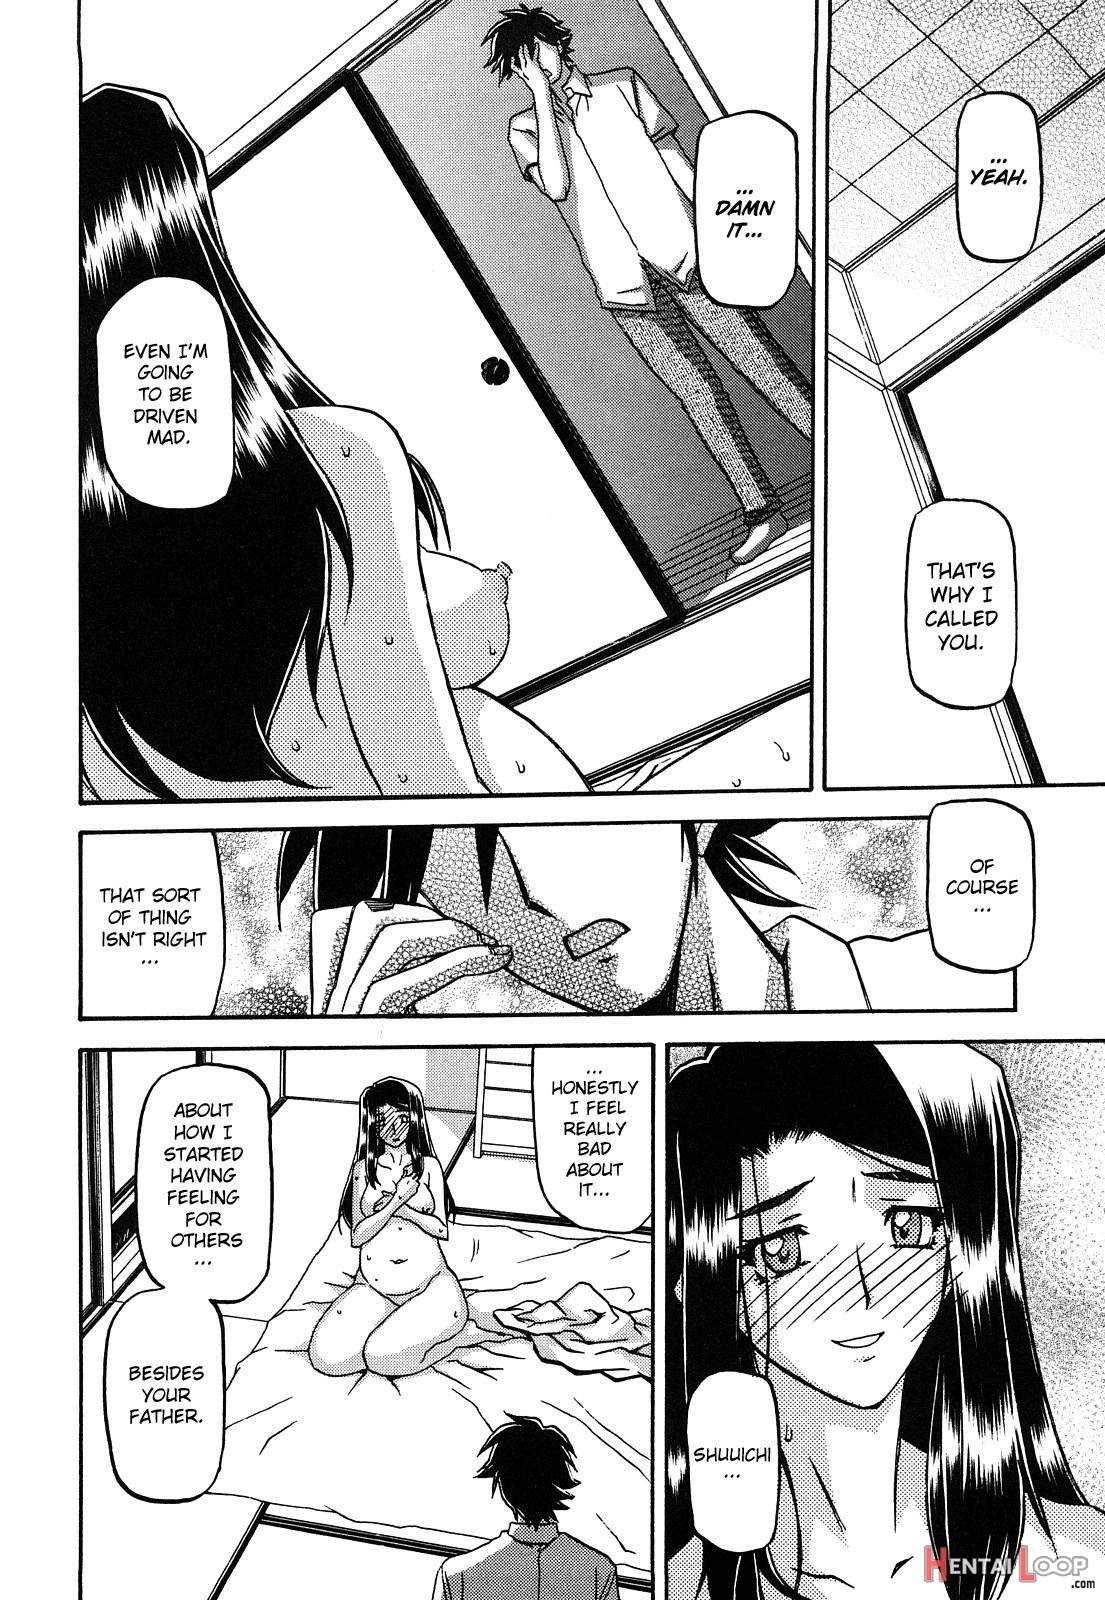 Sayuki No Sato page 296